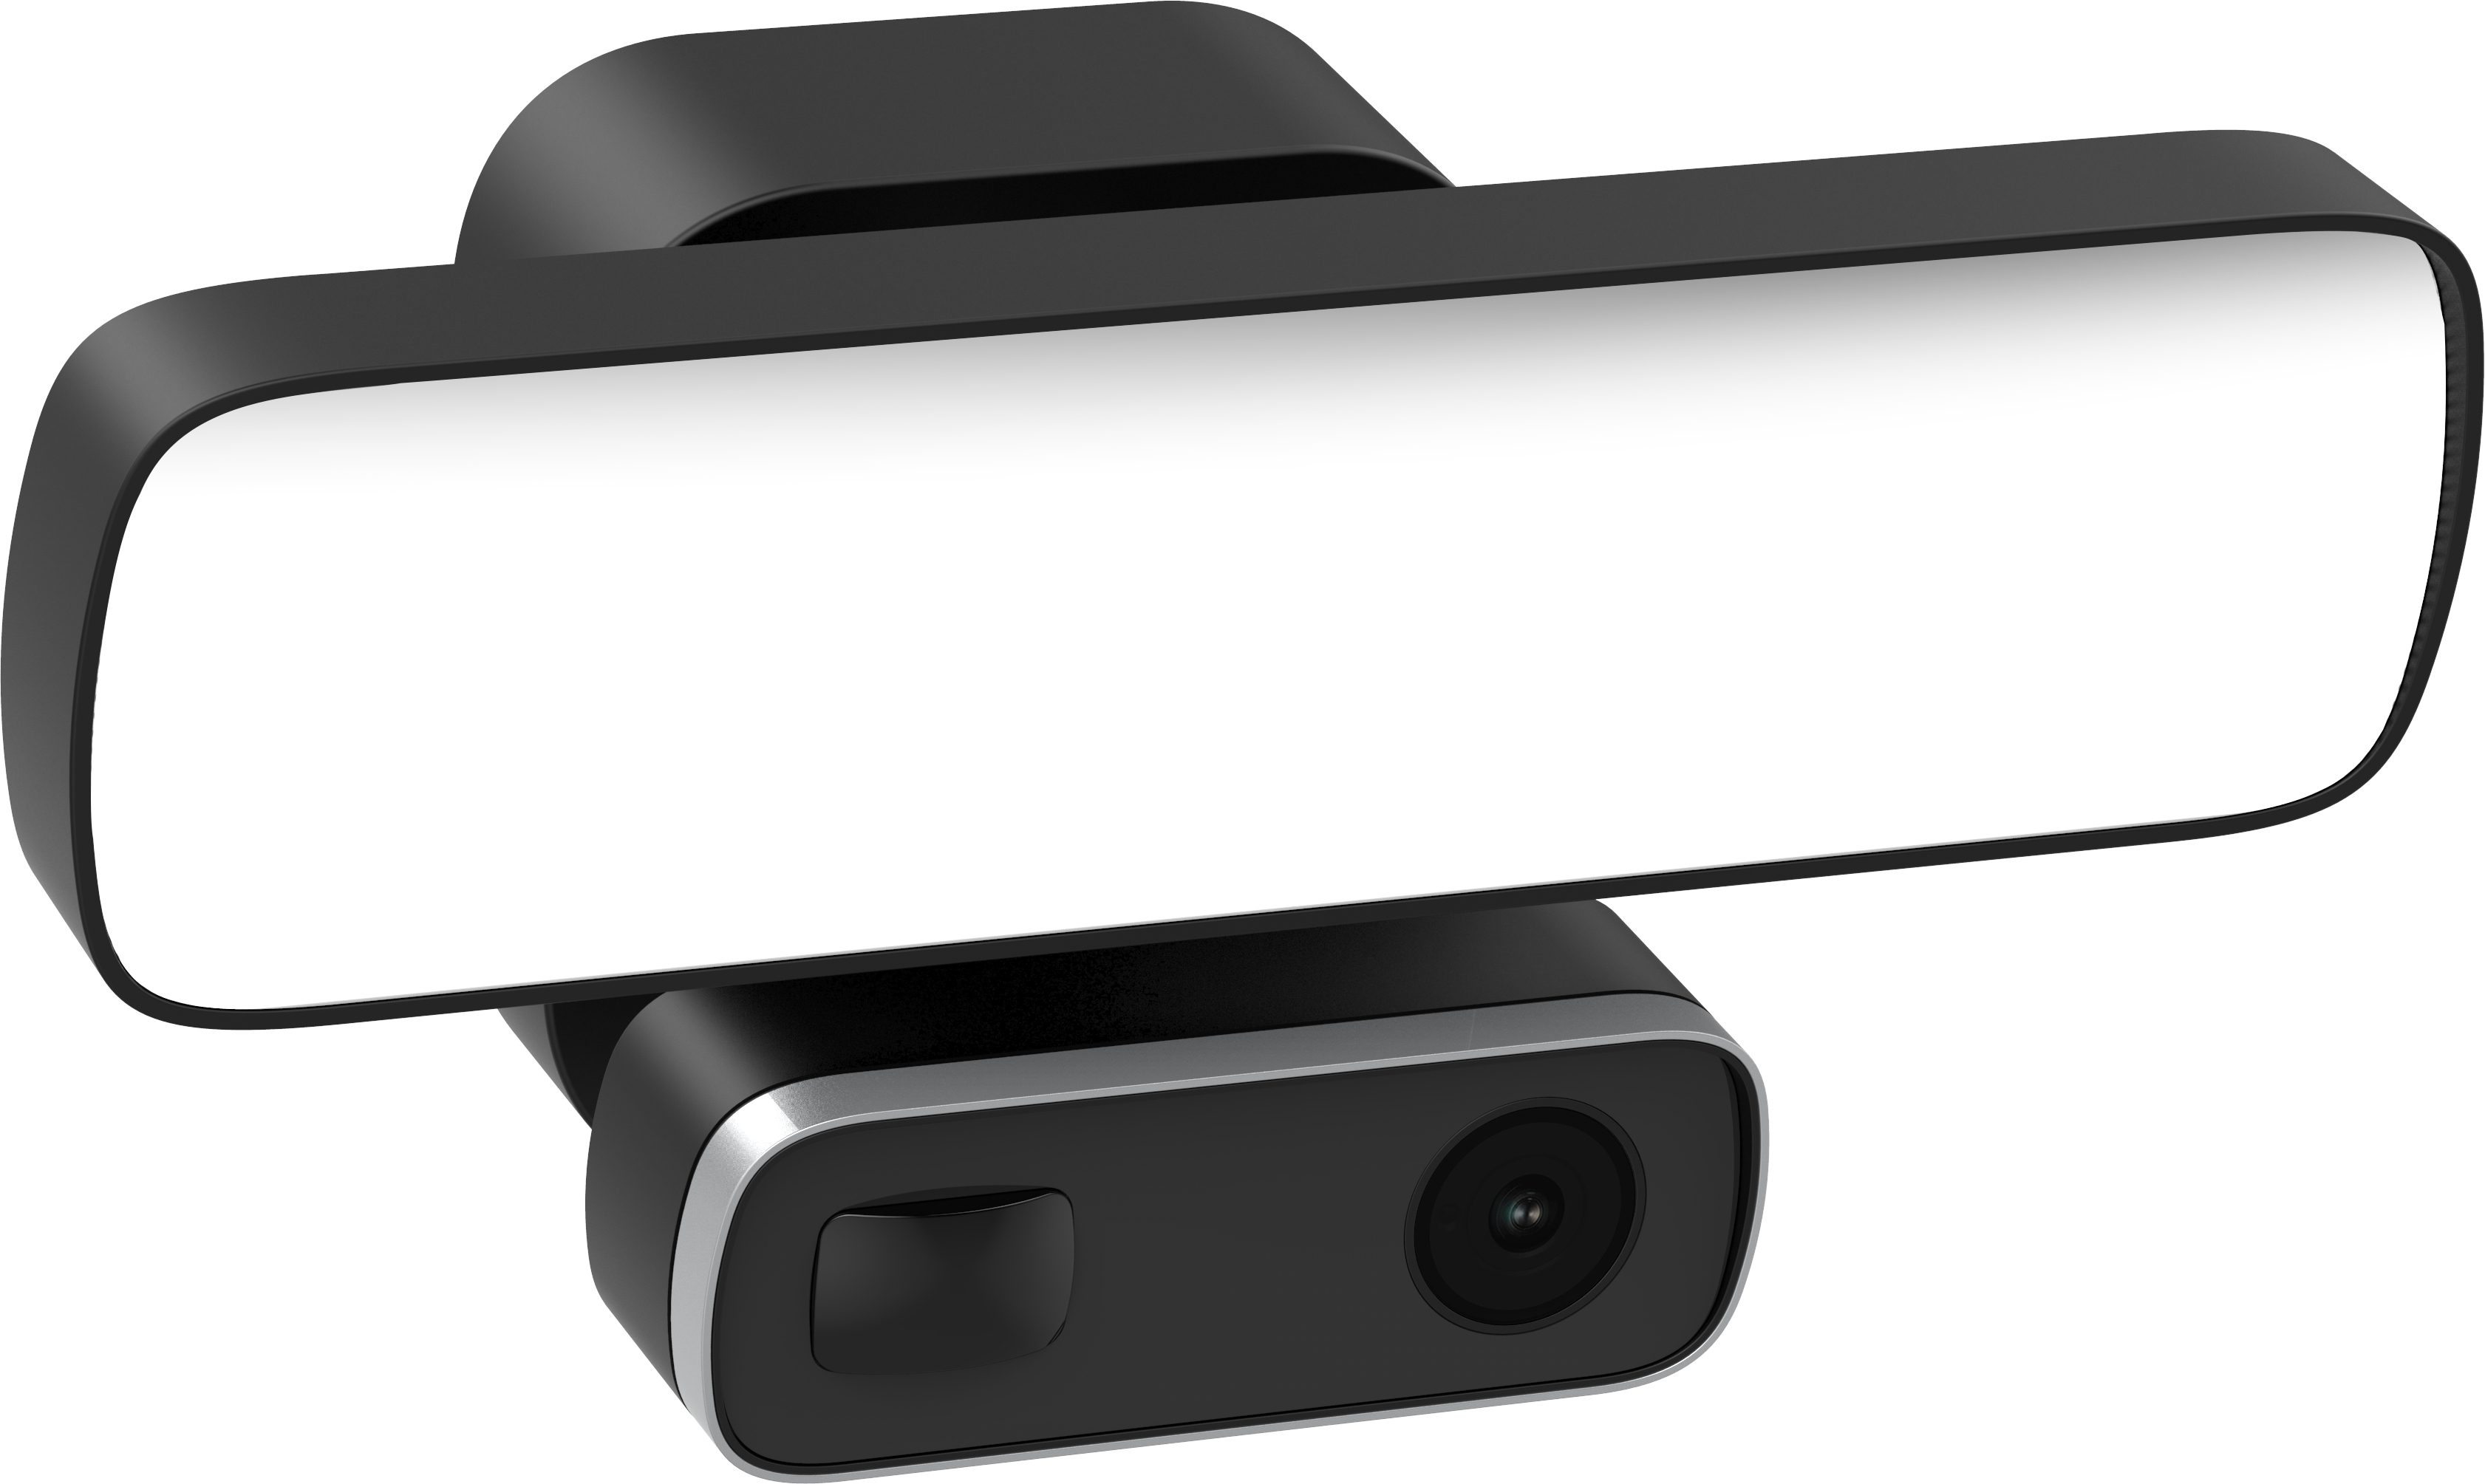 Floodlight Camera GF-L300 Pro ( New)